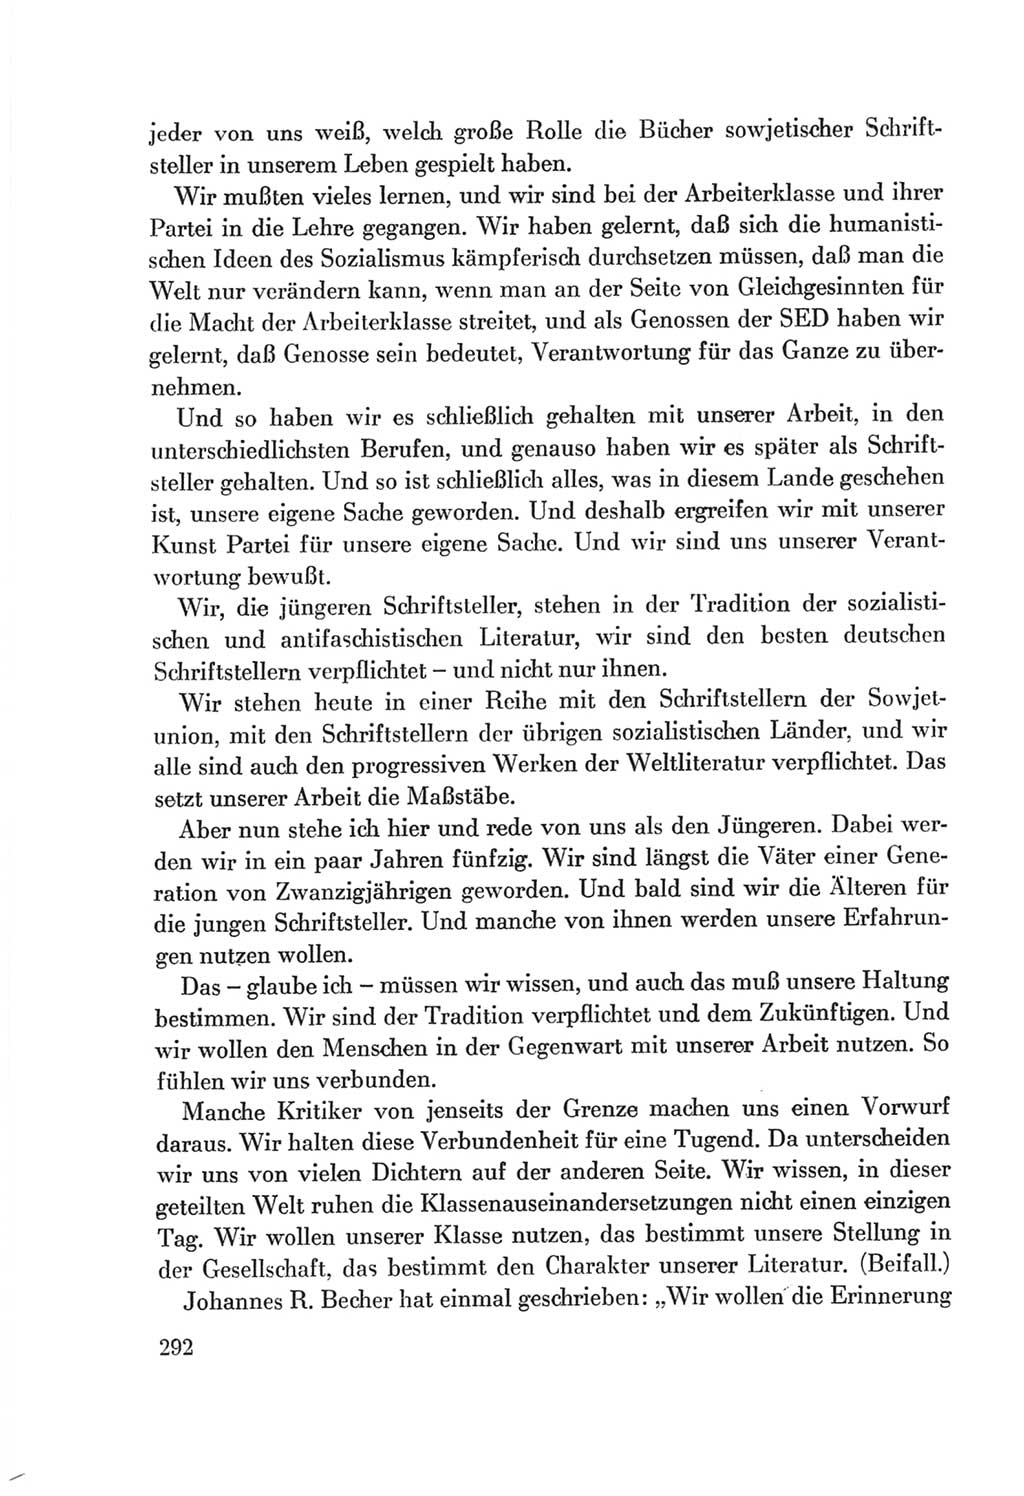 Protokoll der Verhandlungen des Ⅷ. Parteitages der Sozialistischen Einheitspartei Deutschlands (SED) [Deutsche Demokratische Republik (DDR)] 1971, Band 1, Seite 292 (Prot. Verh. Ⅷ. PT SED DDR 1971, Bd. 1, S. 292)